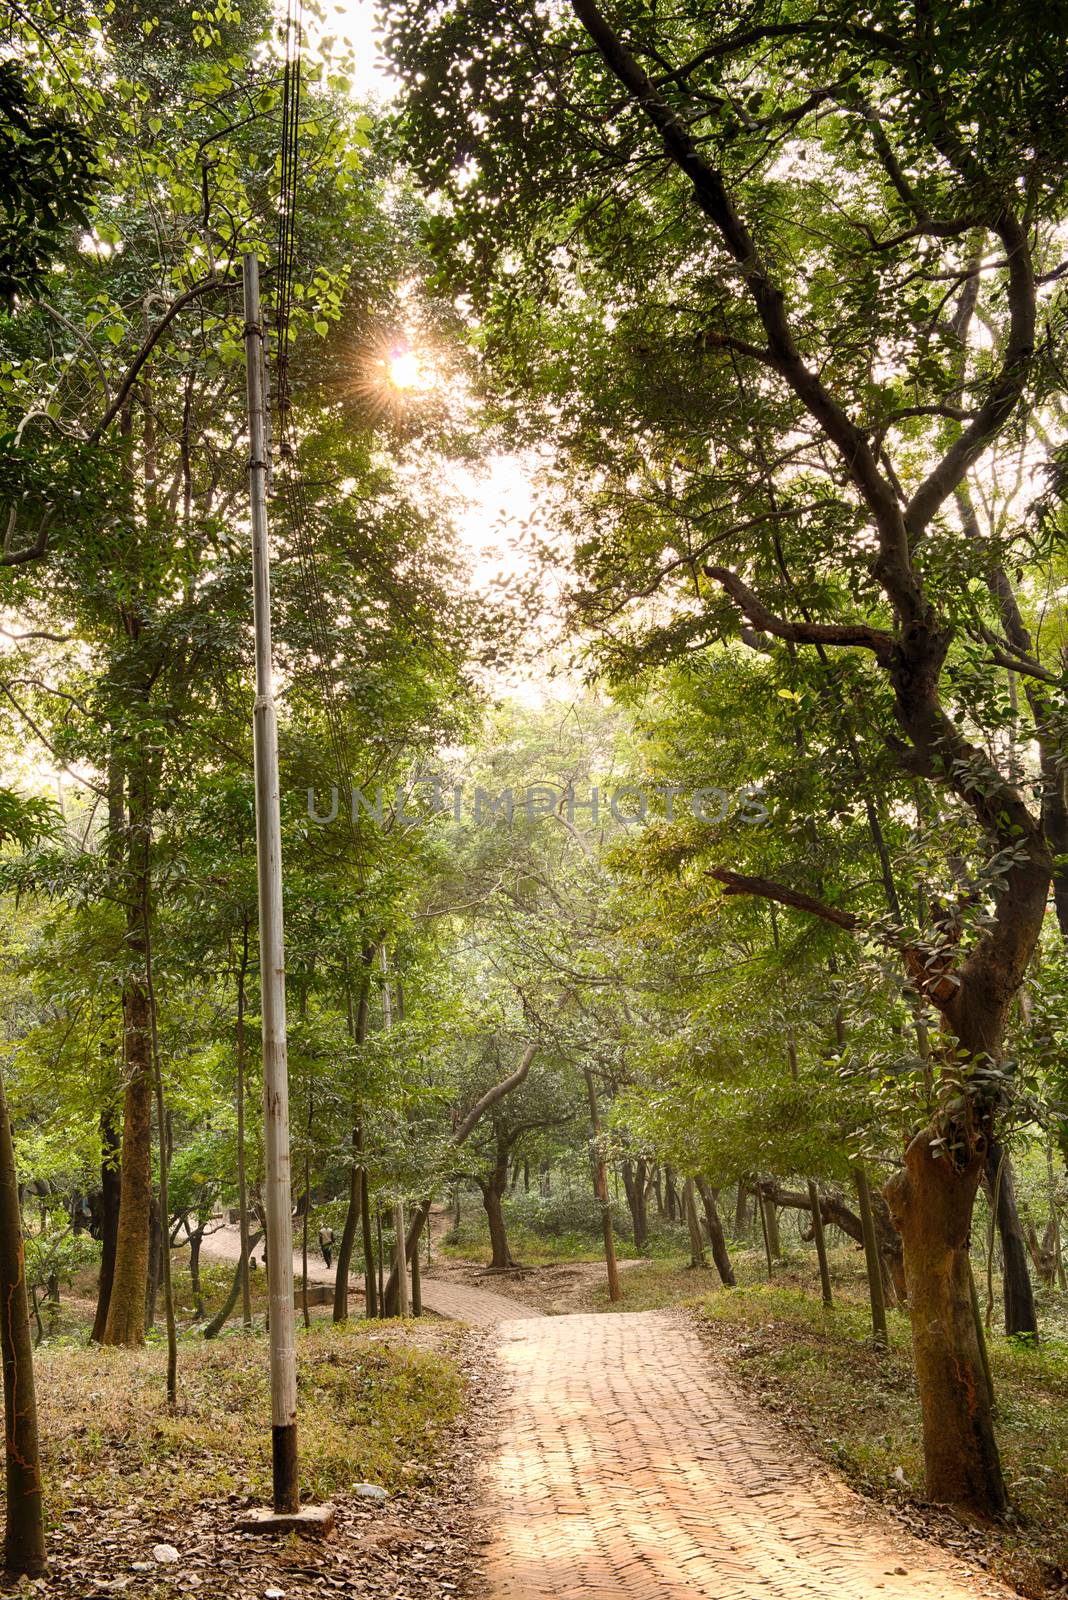 magic forest path by sohel.parvez@hotmail.com